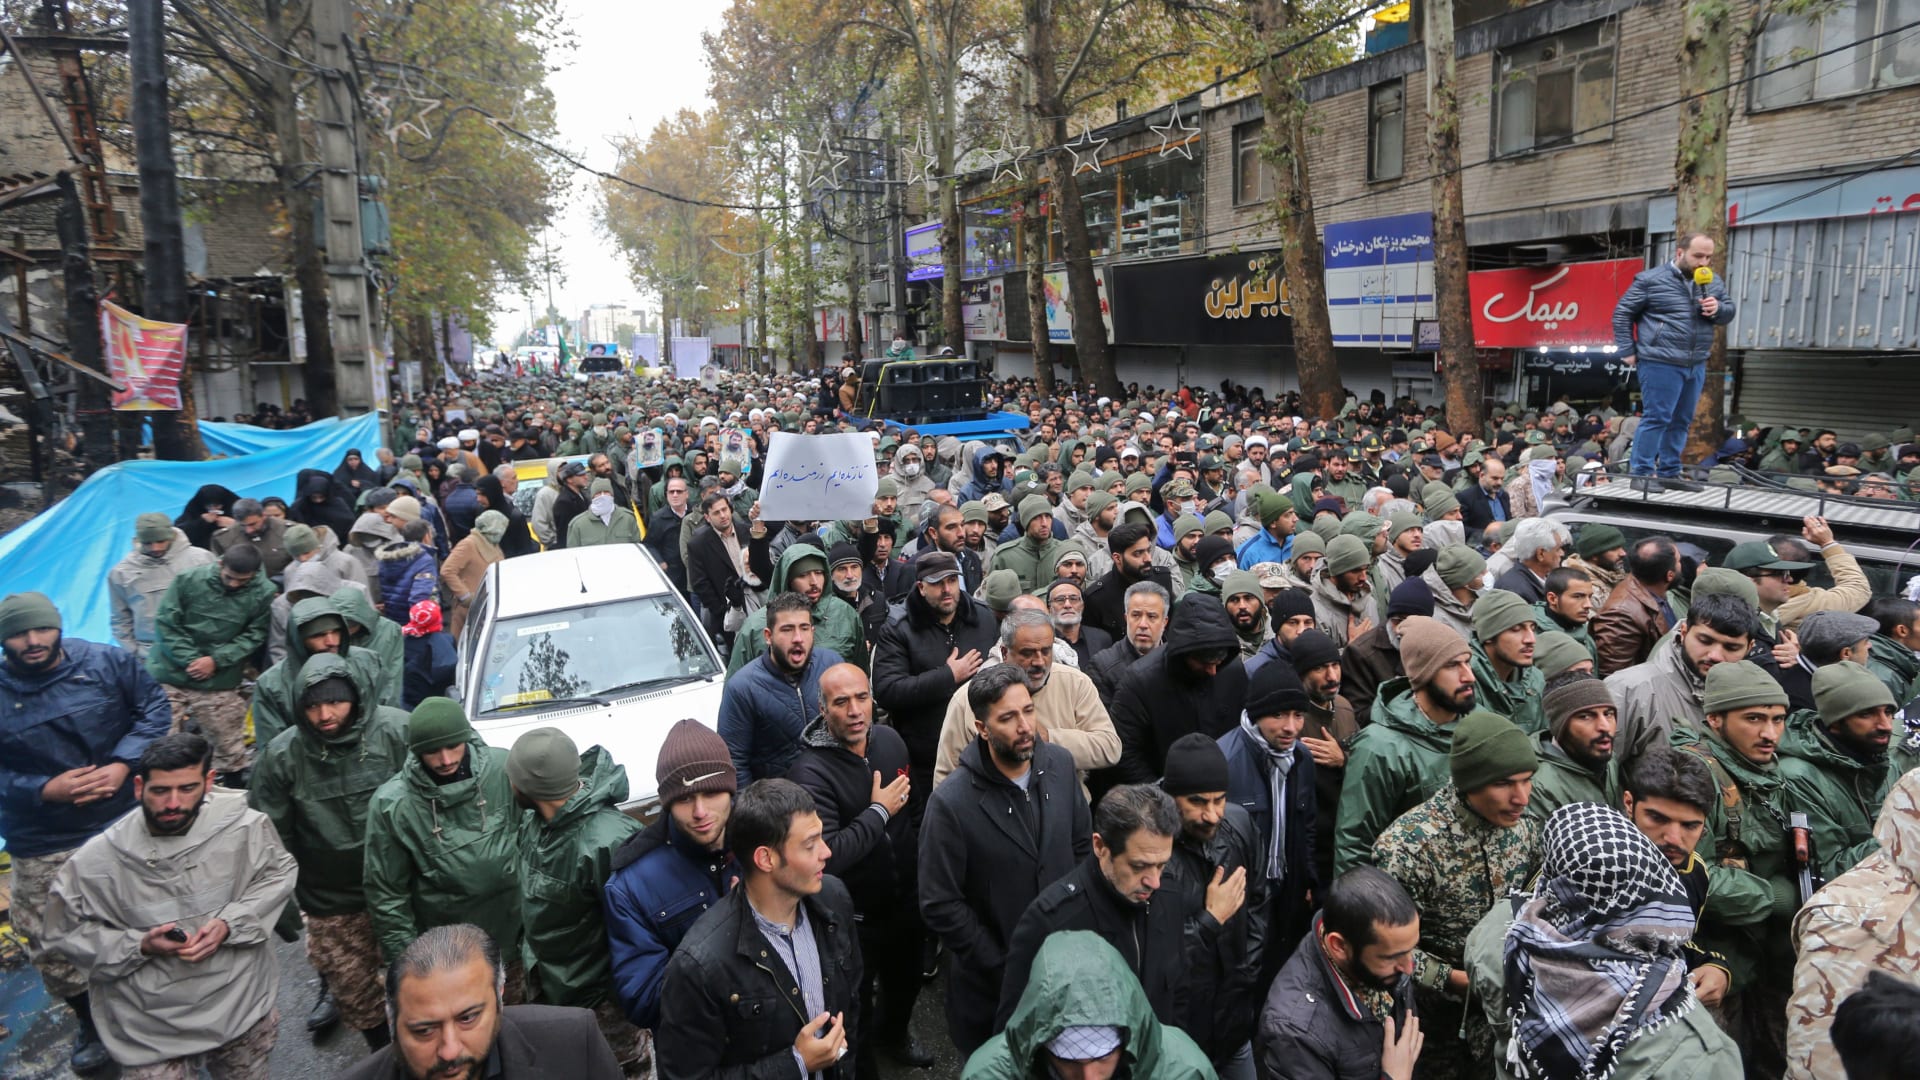 رئيس تحرير "إيران واير": البلاد في حالة صدمة بسبب وحشية فض الاحتجاجات الأخيرة